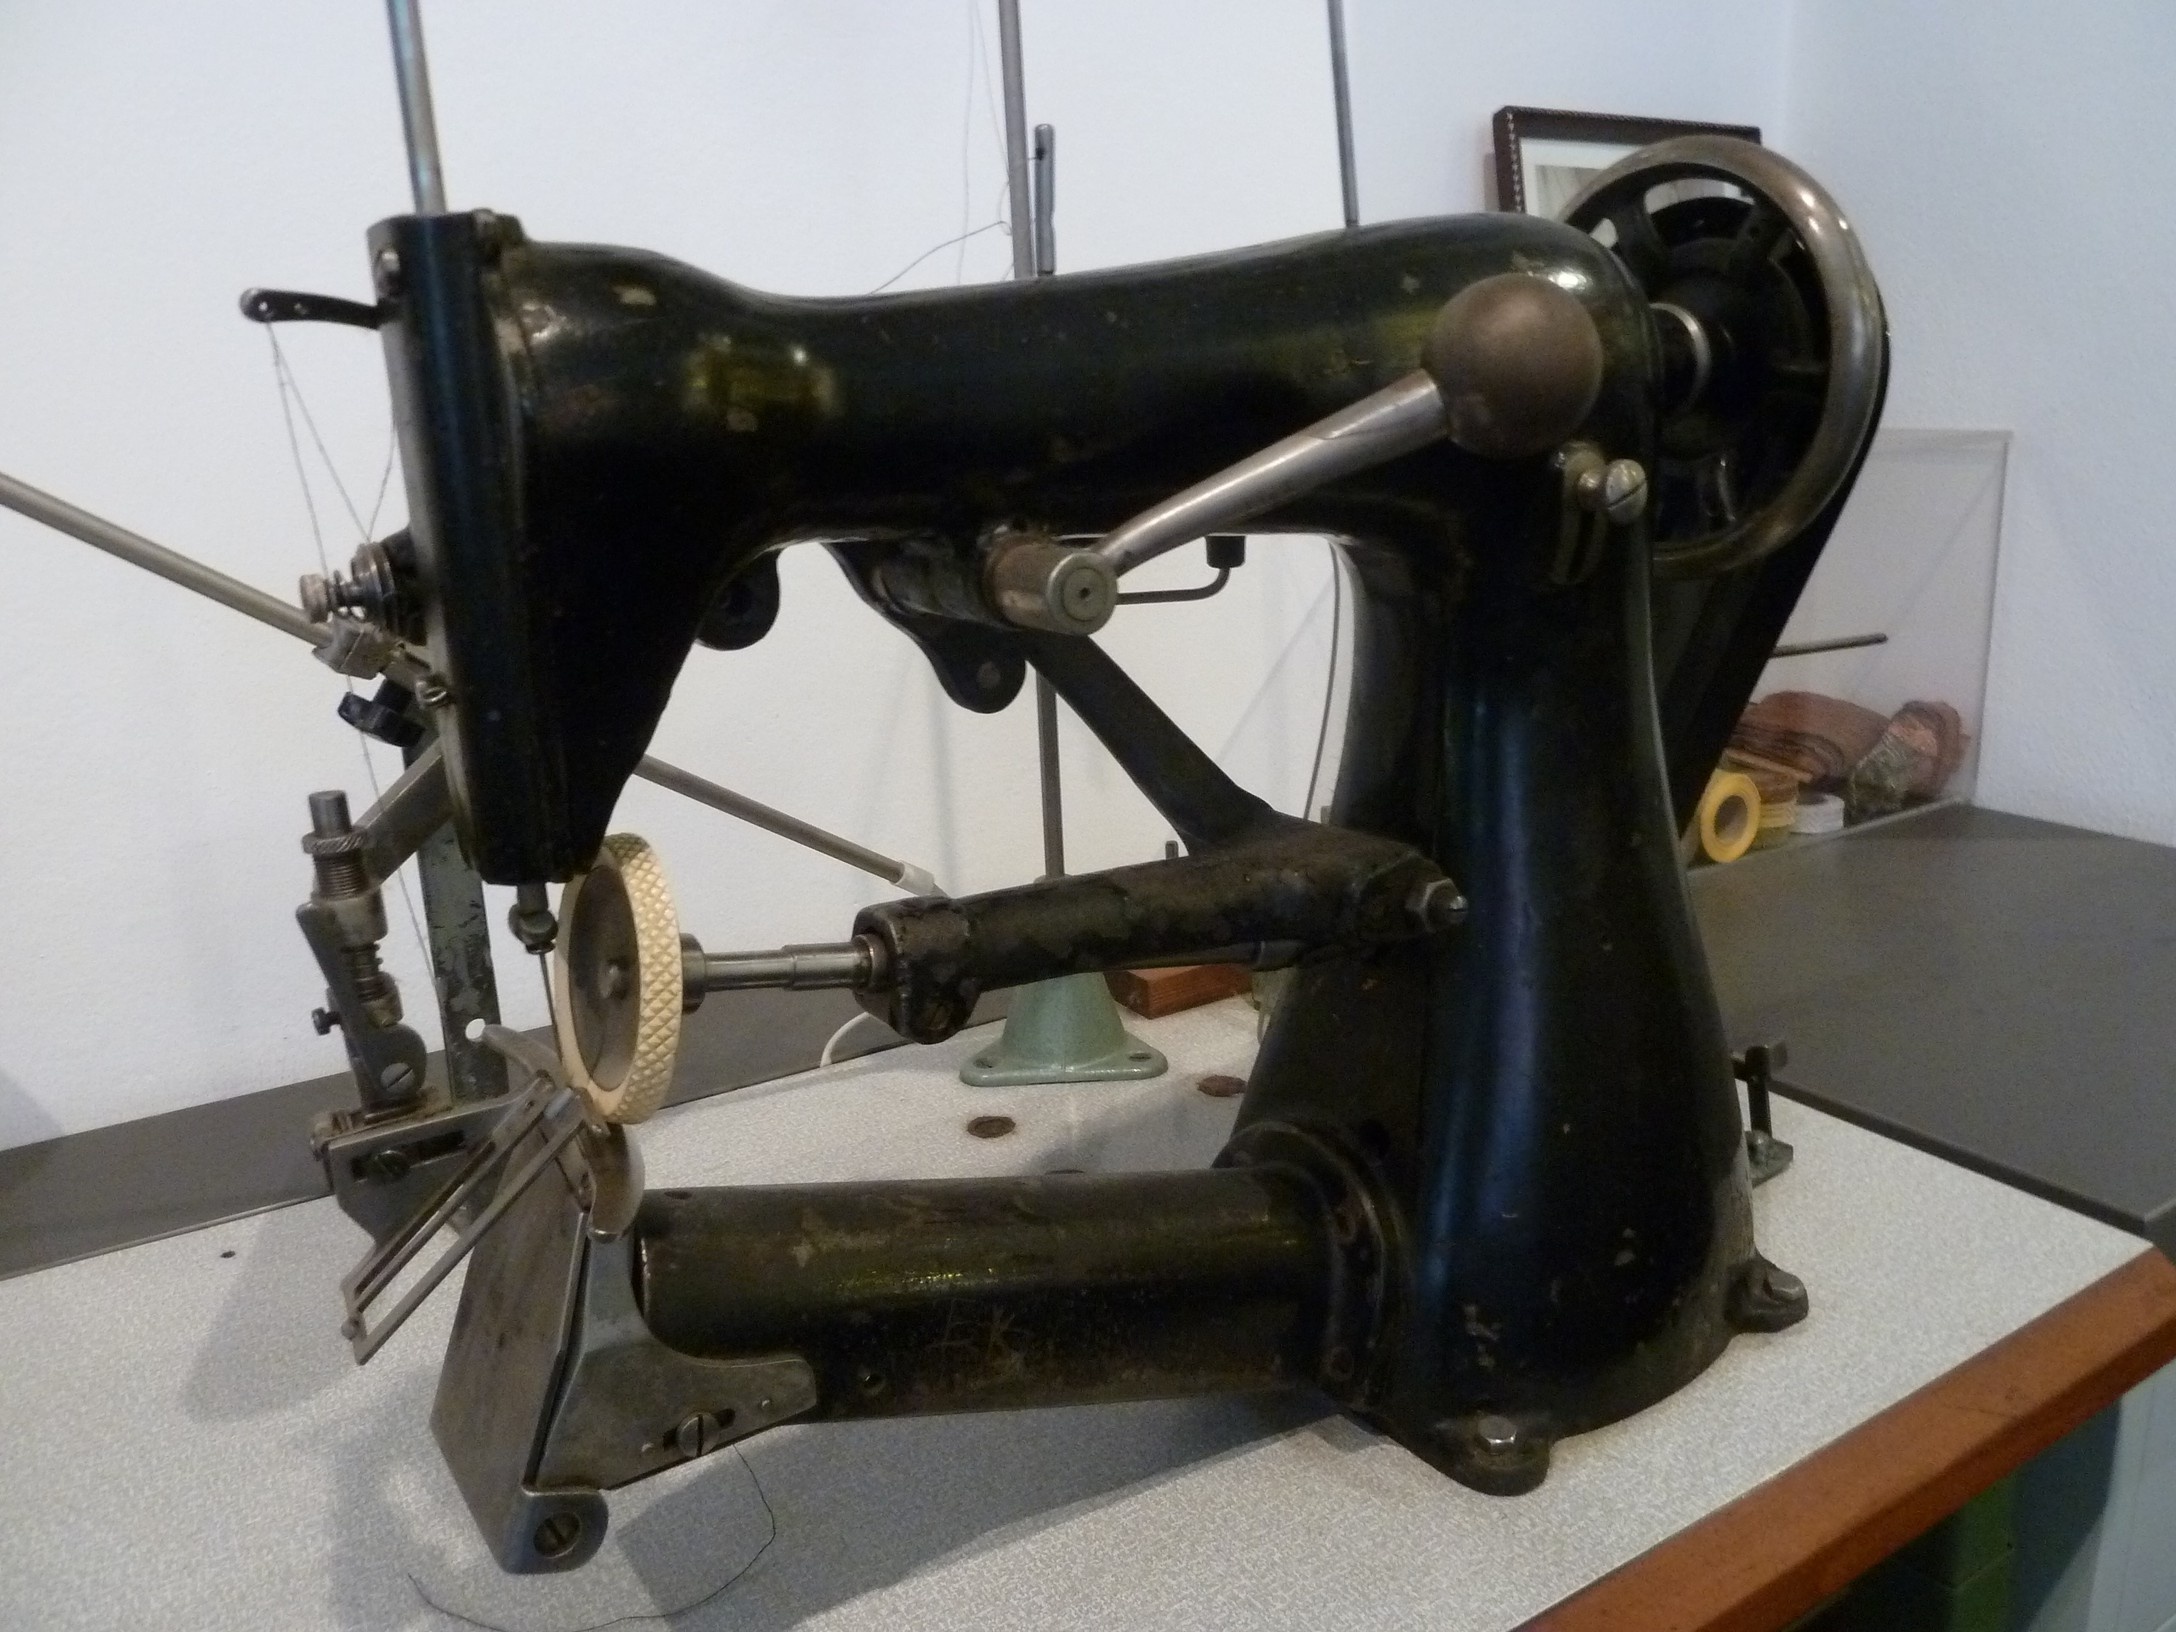 Nähmaschine aus der Hutproduktion (Stiftung Deutsches Technikmuseum Berlin CC0)